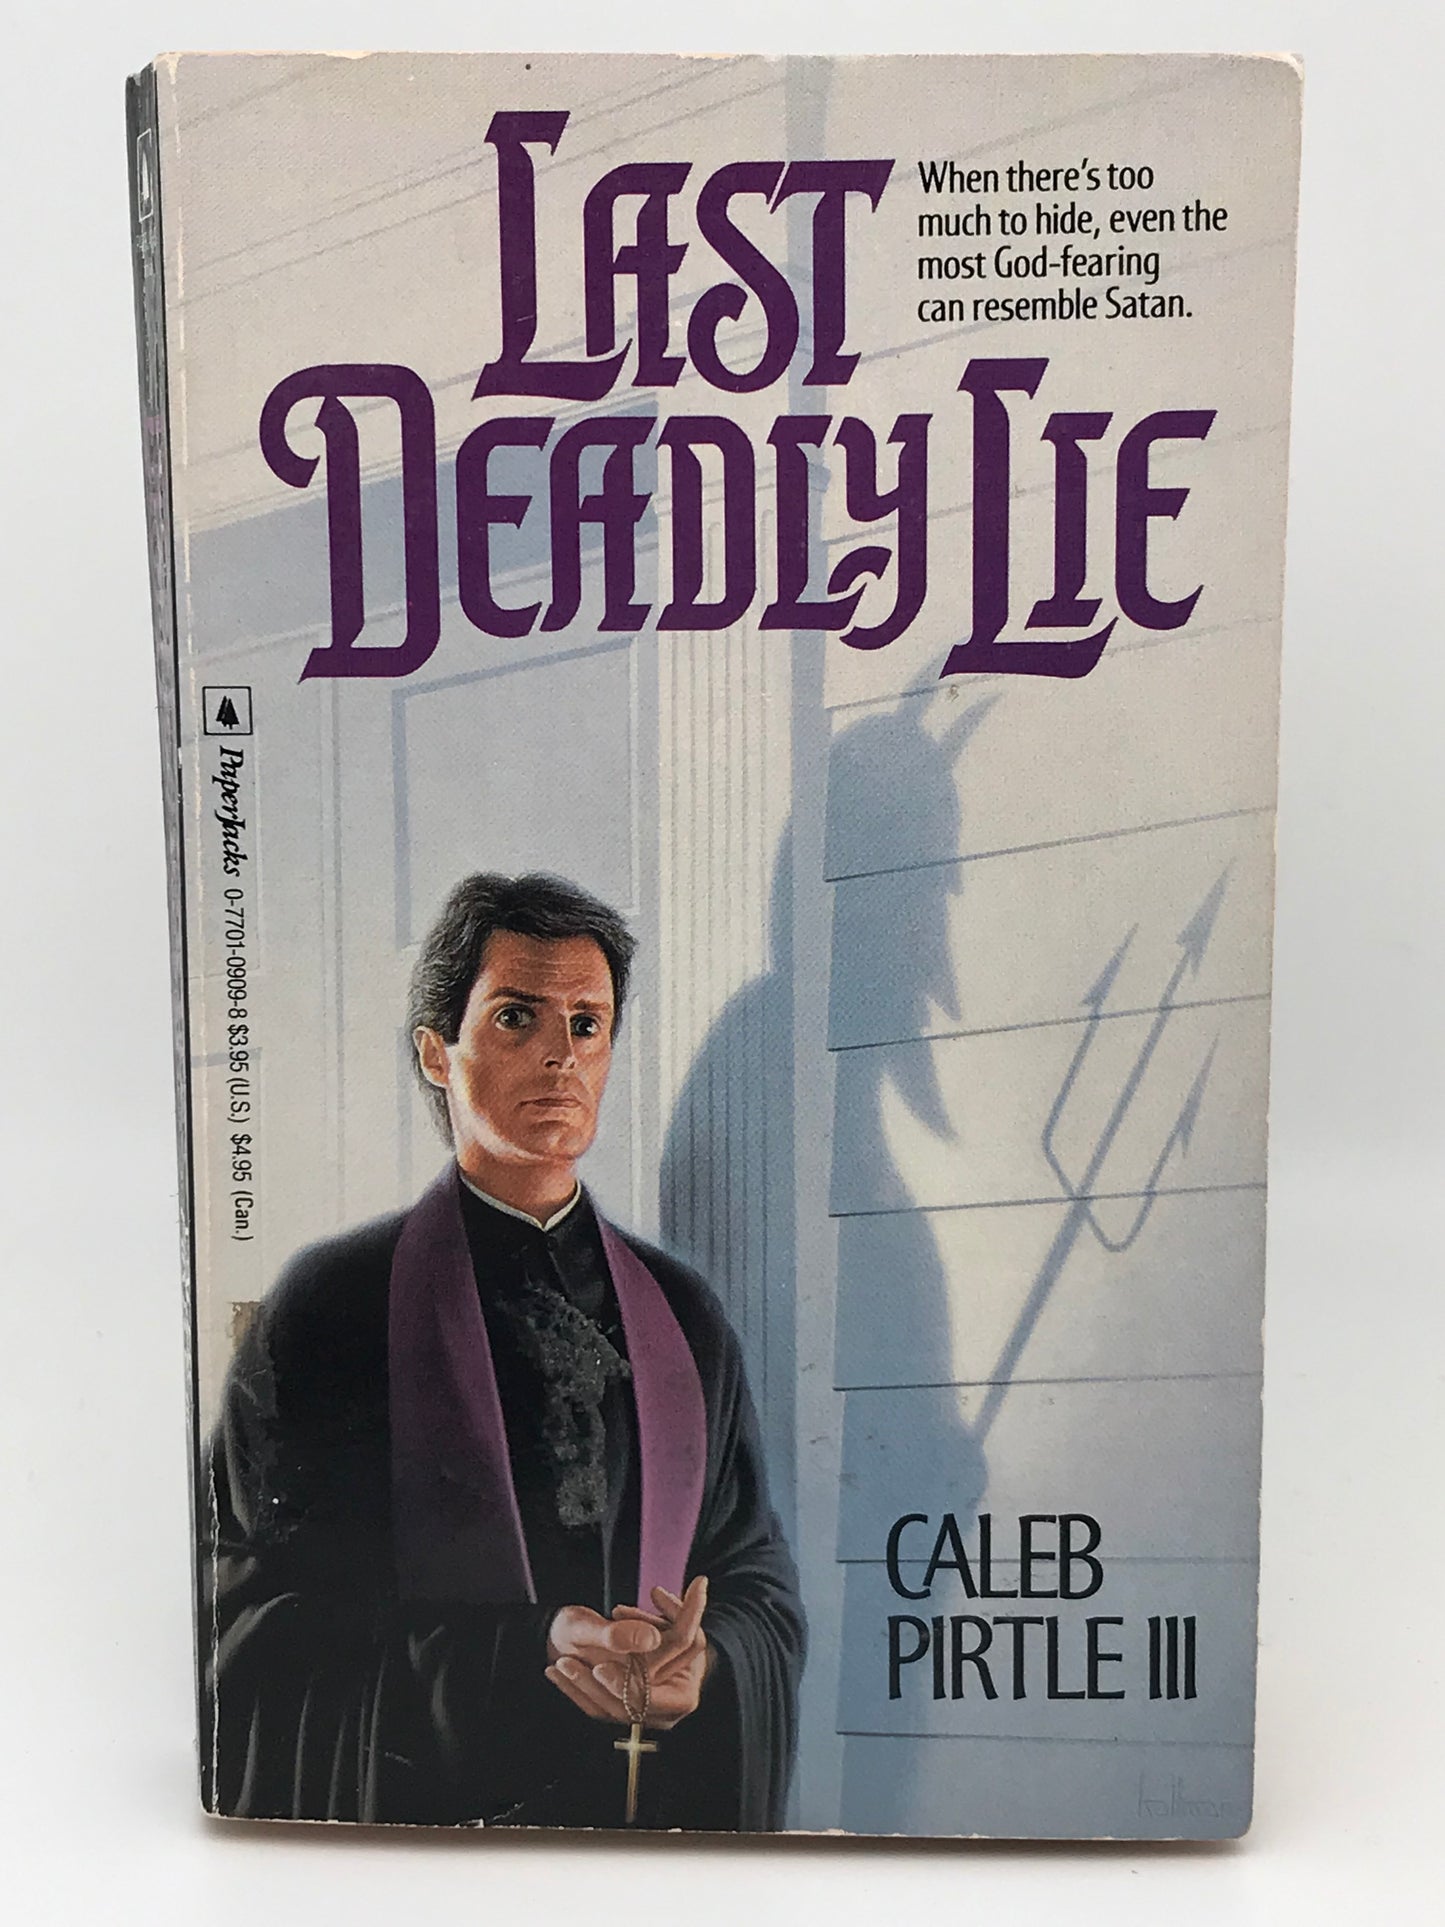 Last Deadly Lie PAPERJACKS Paperback Caleb Pirtle III H01